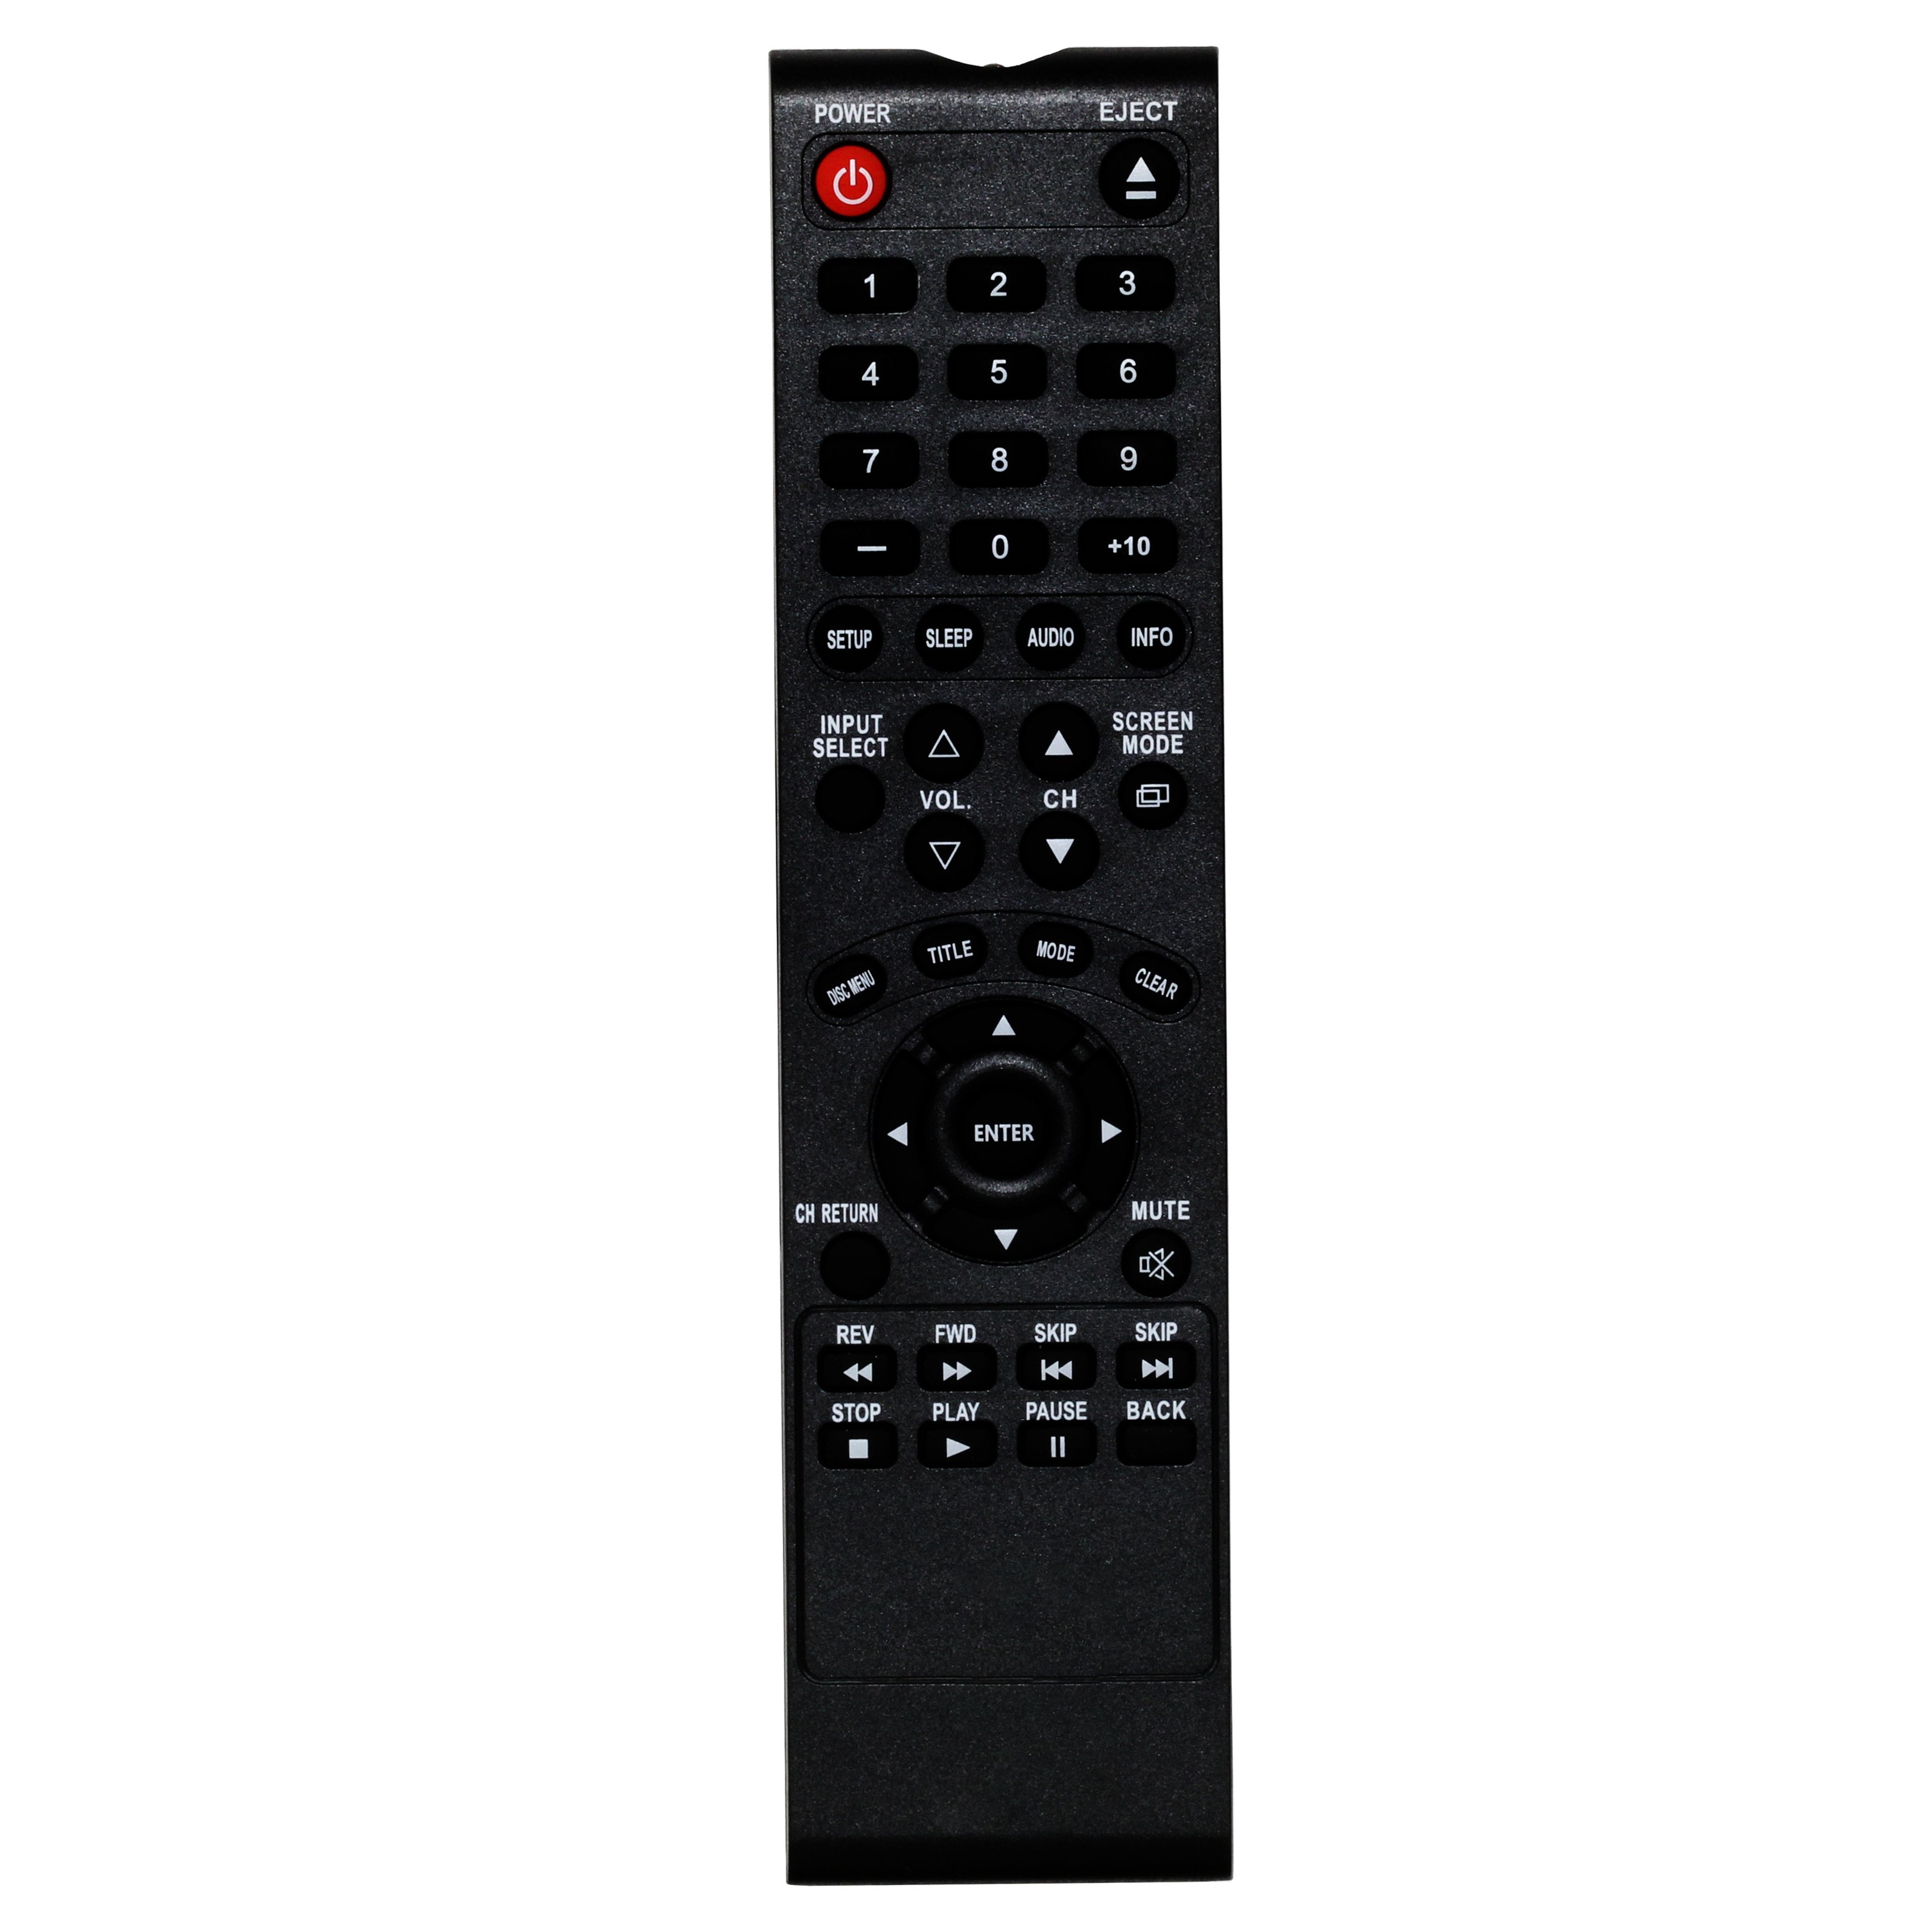 Sylvania RPK712AK02  TV Remote